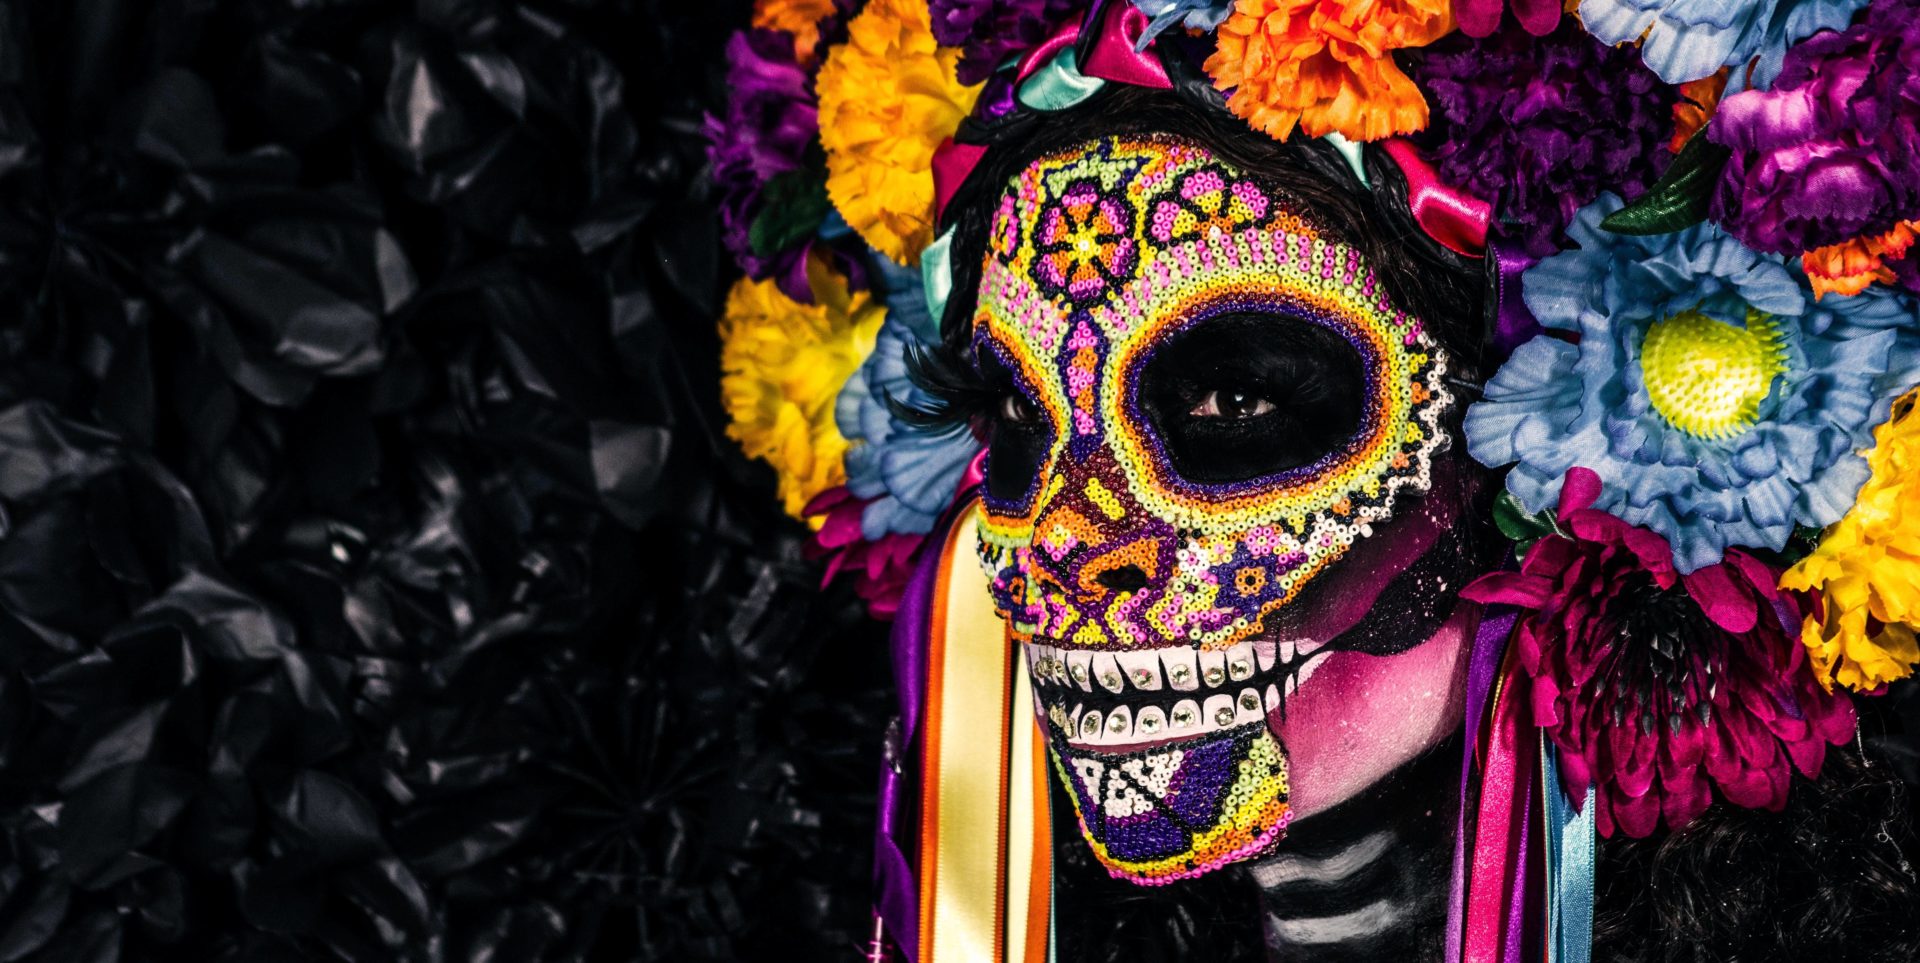 Meksiko kao zemlja zanimljive i raznolike kulture